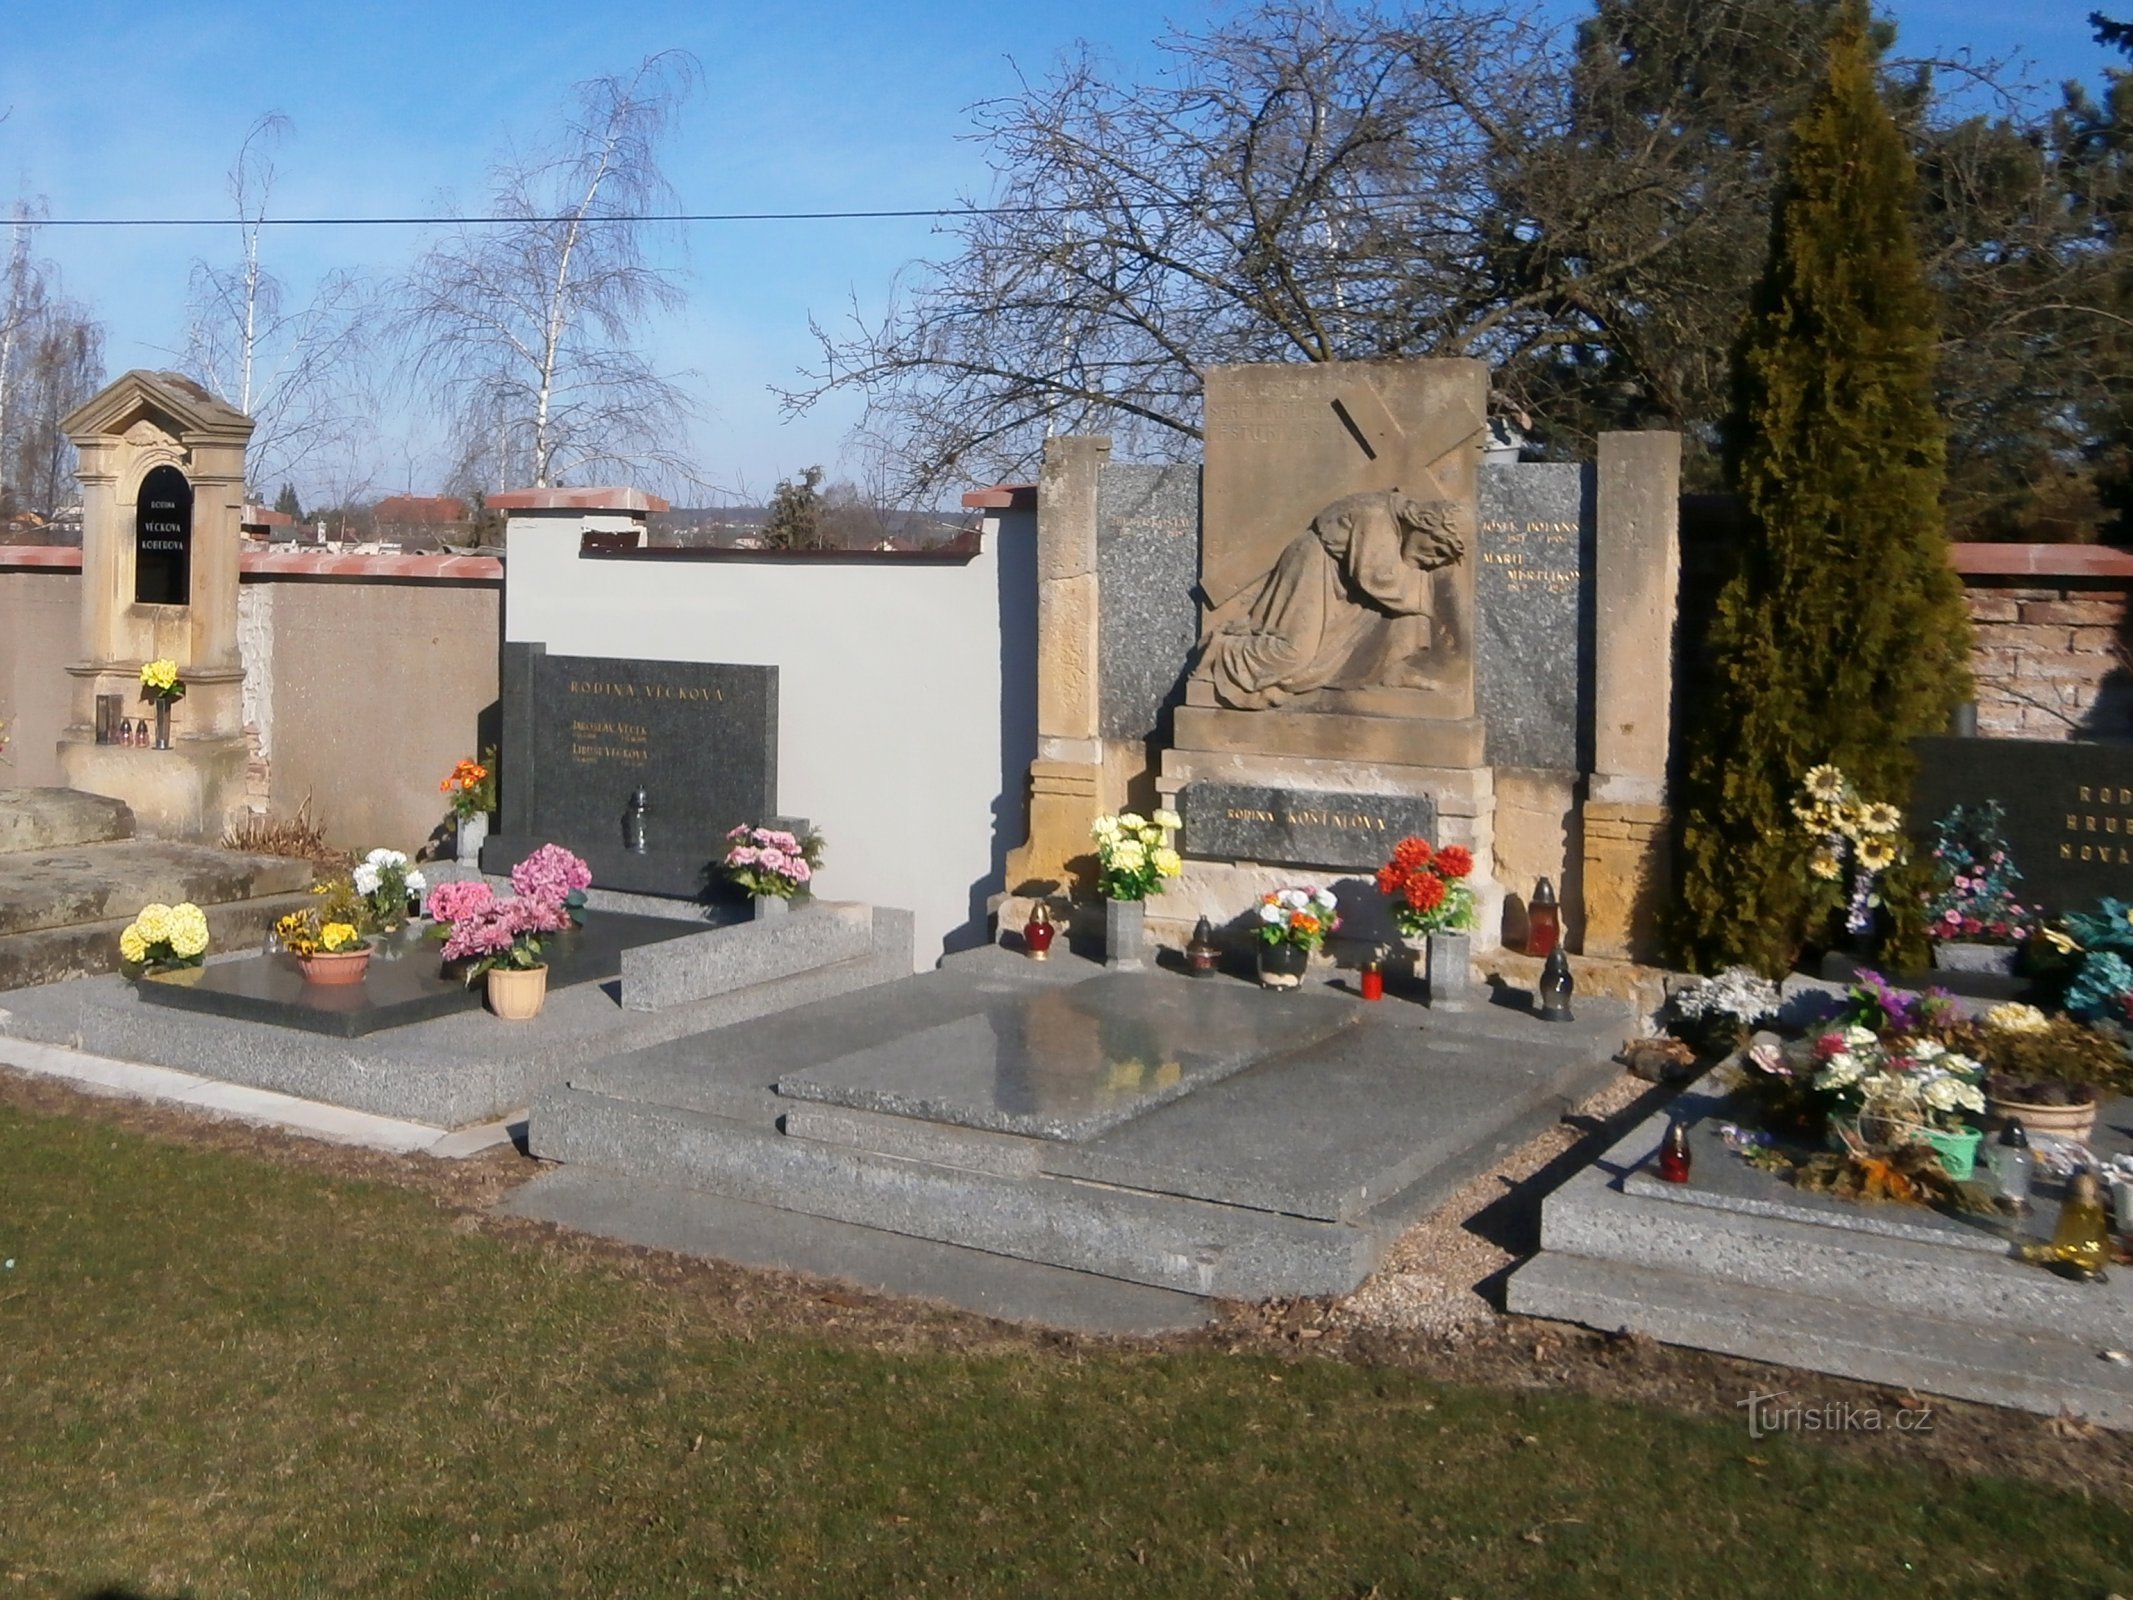 Cimitirul (Praskačka)